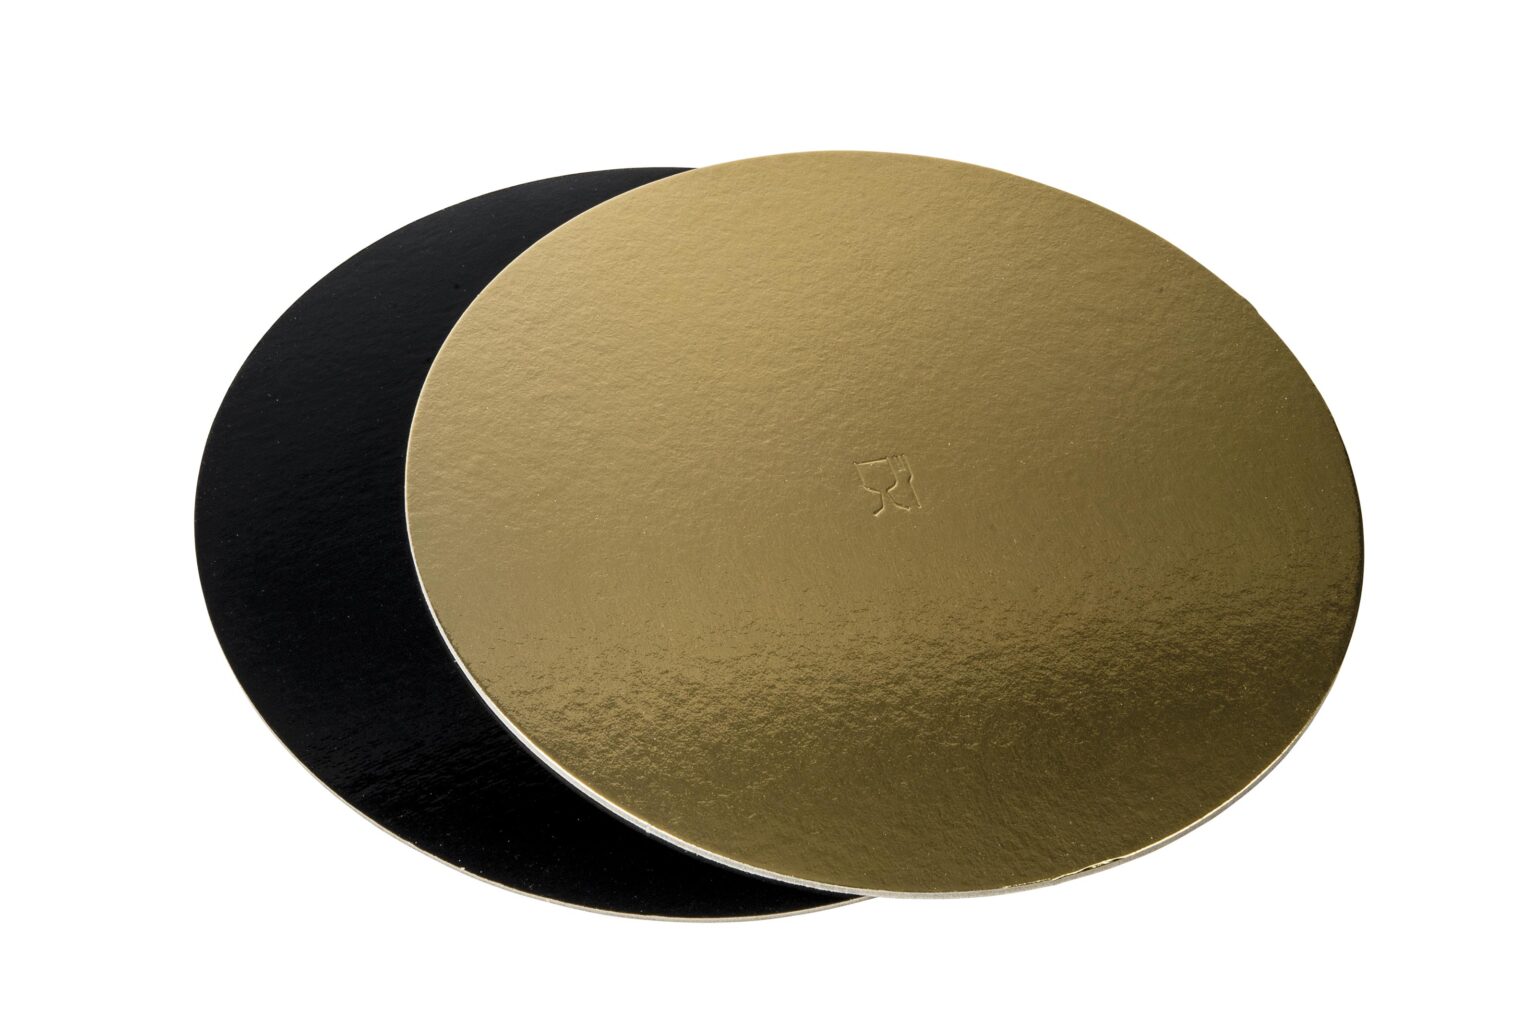 Discuri groase auriu/negru - Discuri groase auriu/negru 2400 gr OE40cm -10 buc/set